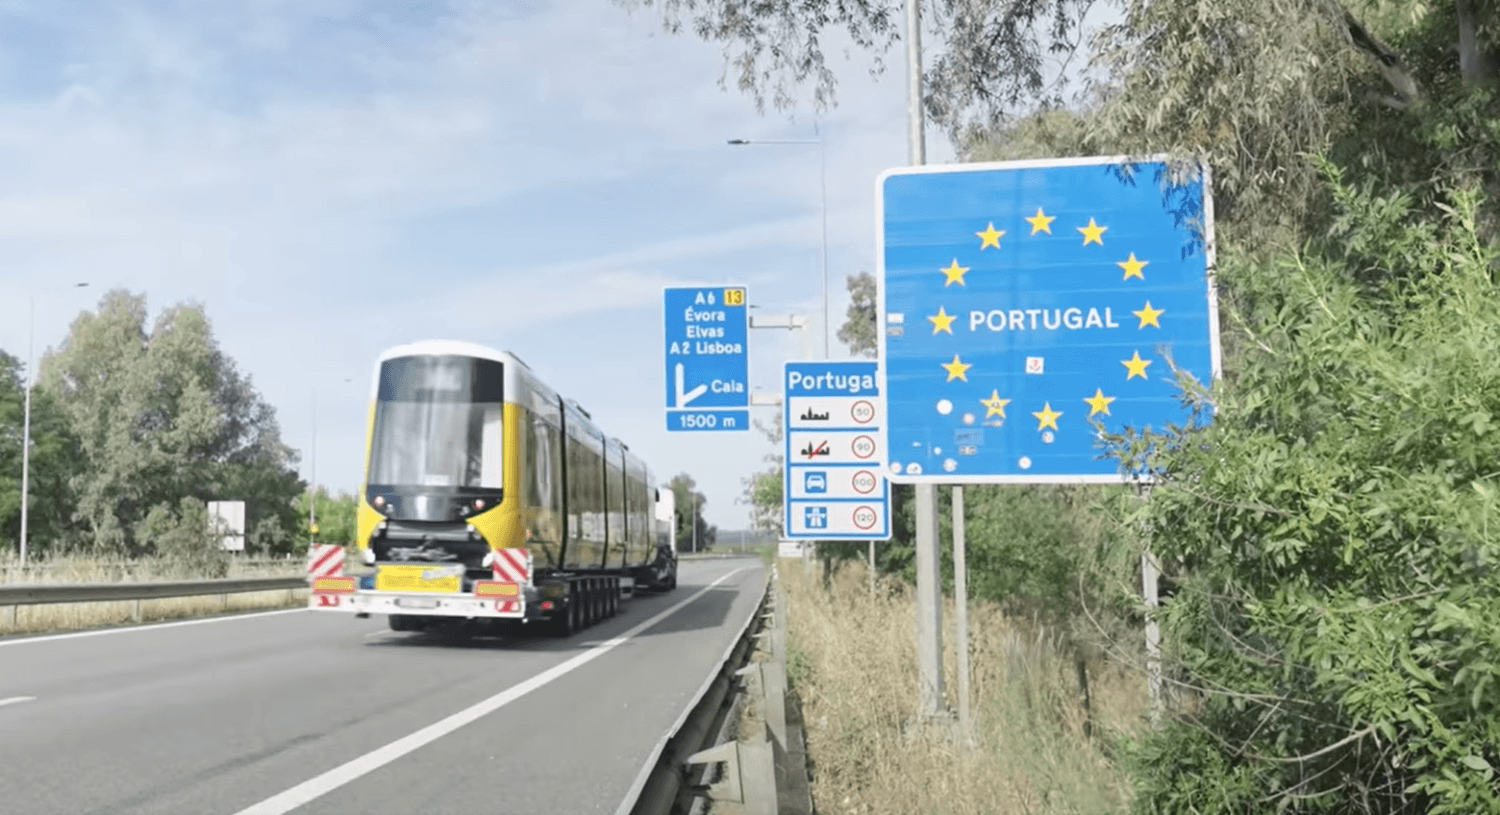 Převoz první tramvaje CAF Urbos 3 ze Španělska do Portugalska se uskutečnil na silničním trajleru. (výřez z videa společnosti Carris)